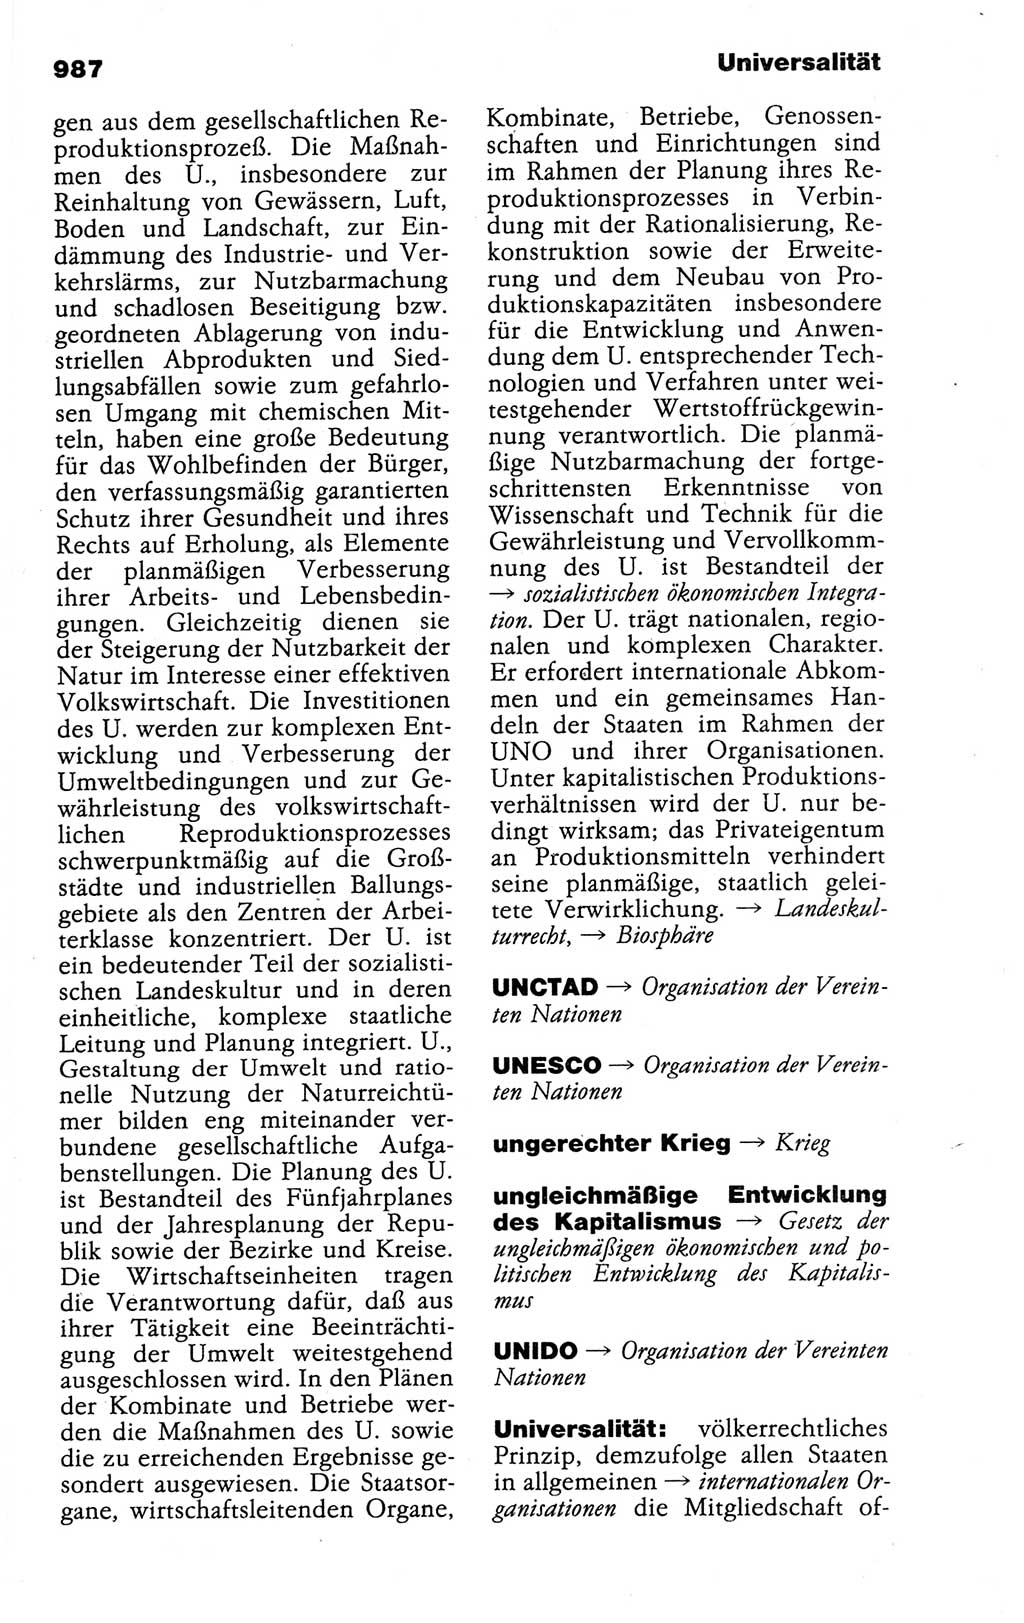 Kleines politisches Wörterbuch [Deutsche Demokratische Republik (DDR)] 1988, Seite 987 (Kl. pol. Wb. DDR 1988, S. 987)